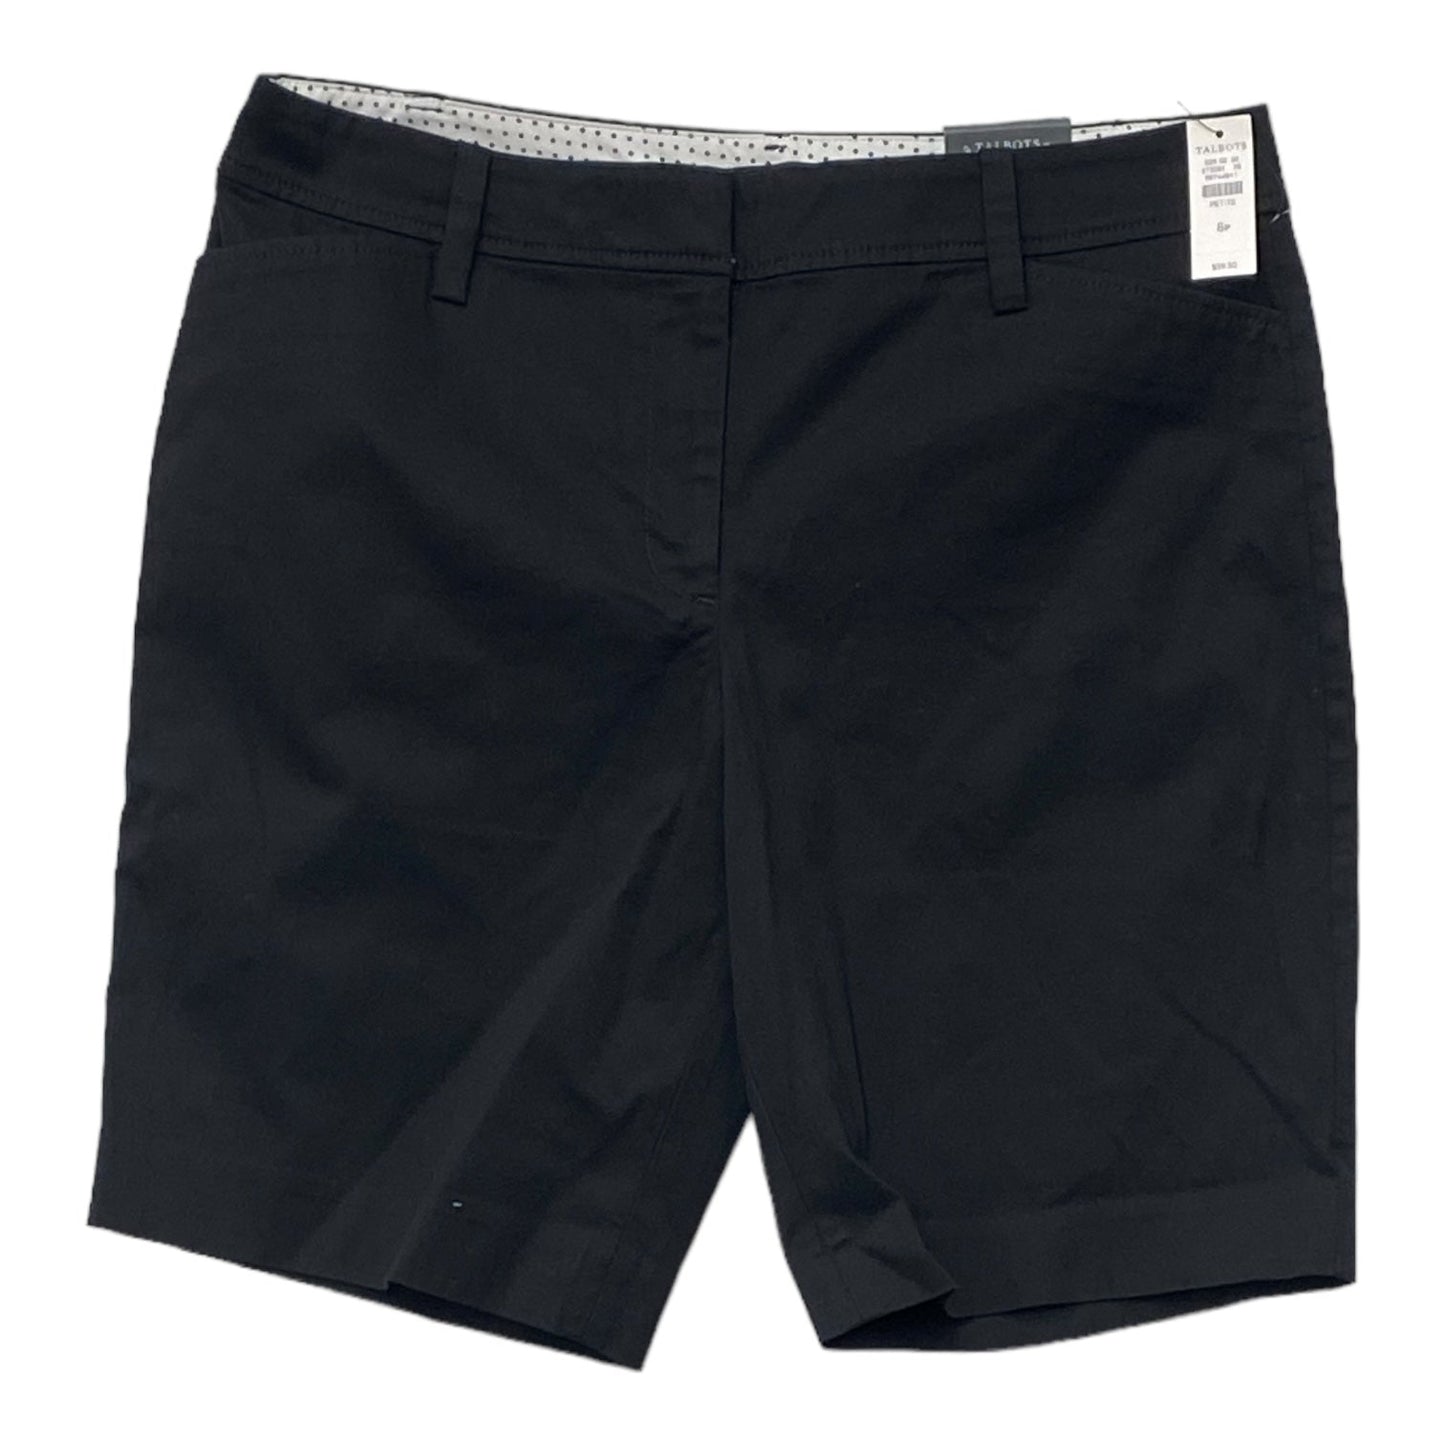 Black Shorts Talbots, Size 8petite